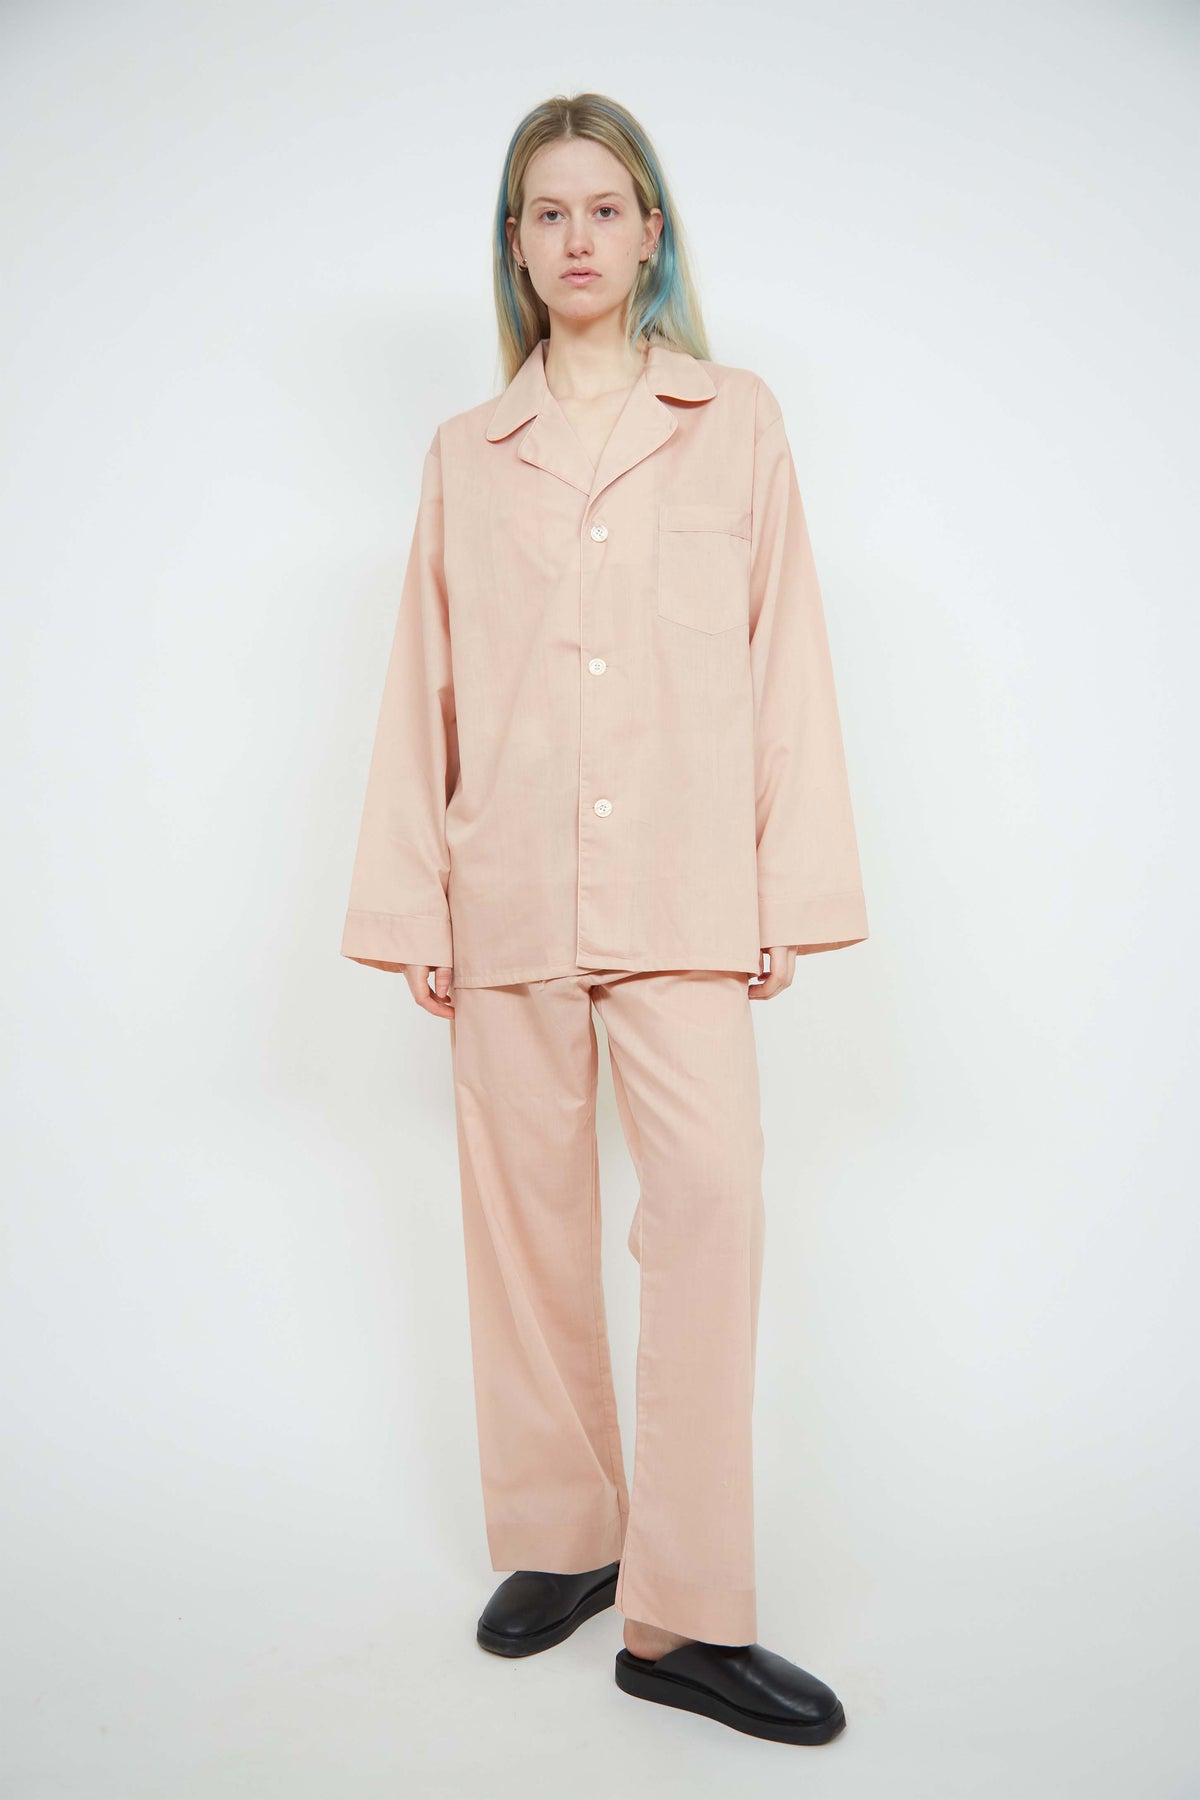 Yves Saint Laurent pajamas